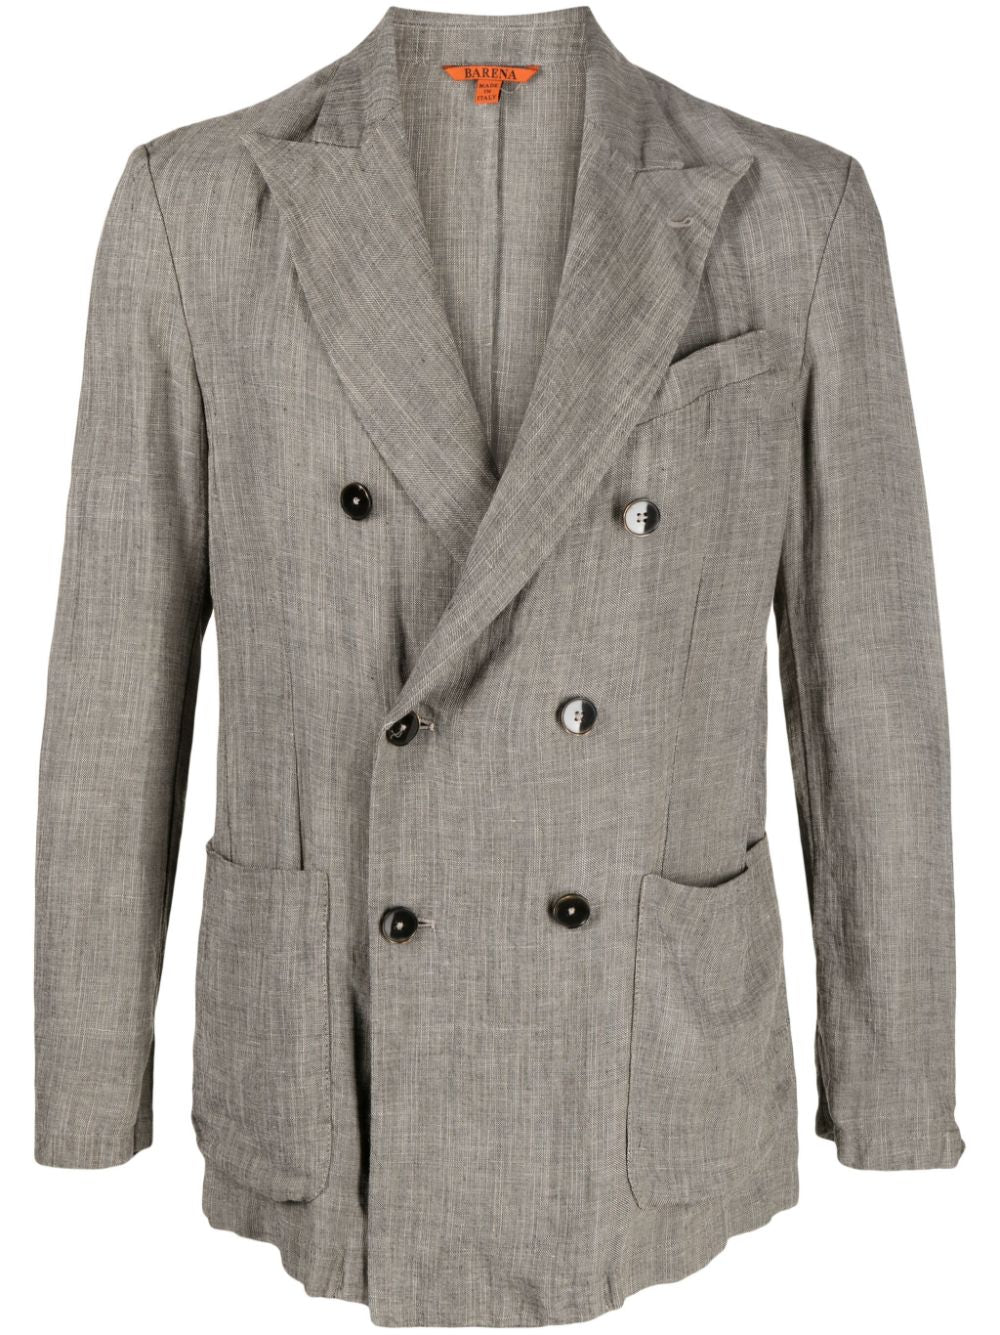 Gray scirrocco blazer